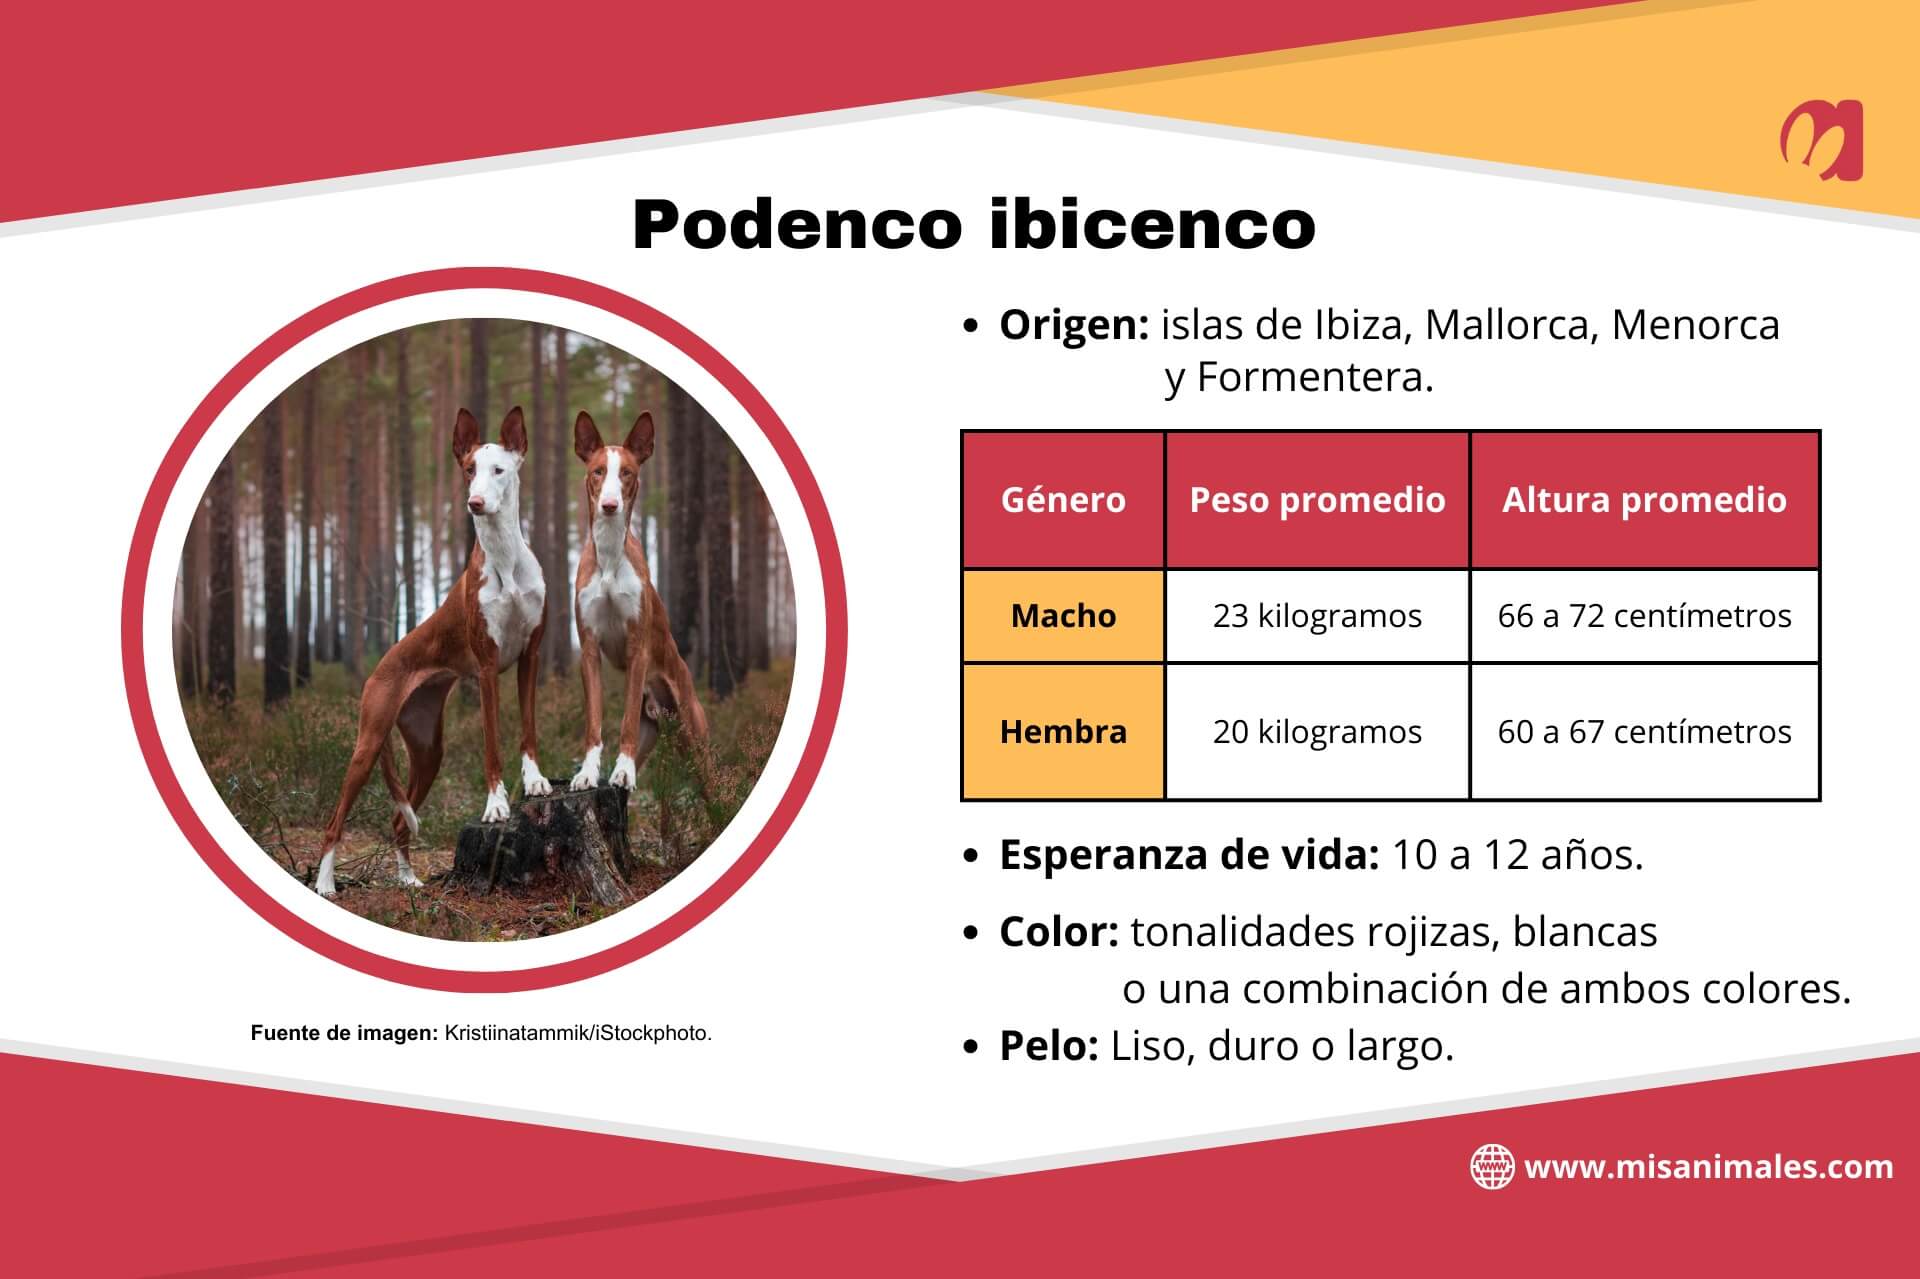 Ficha del podenco ibicenco que especifica su origen, peso y altura promedio por género, así como la esperanza de vida, color y pelo. 